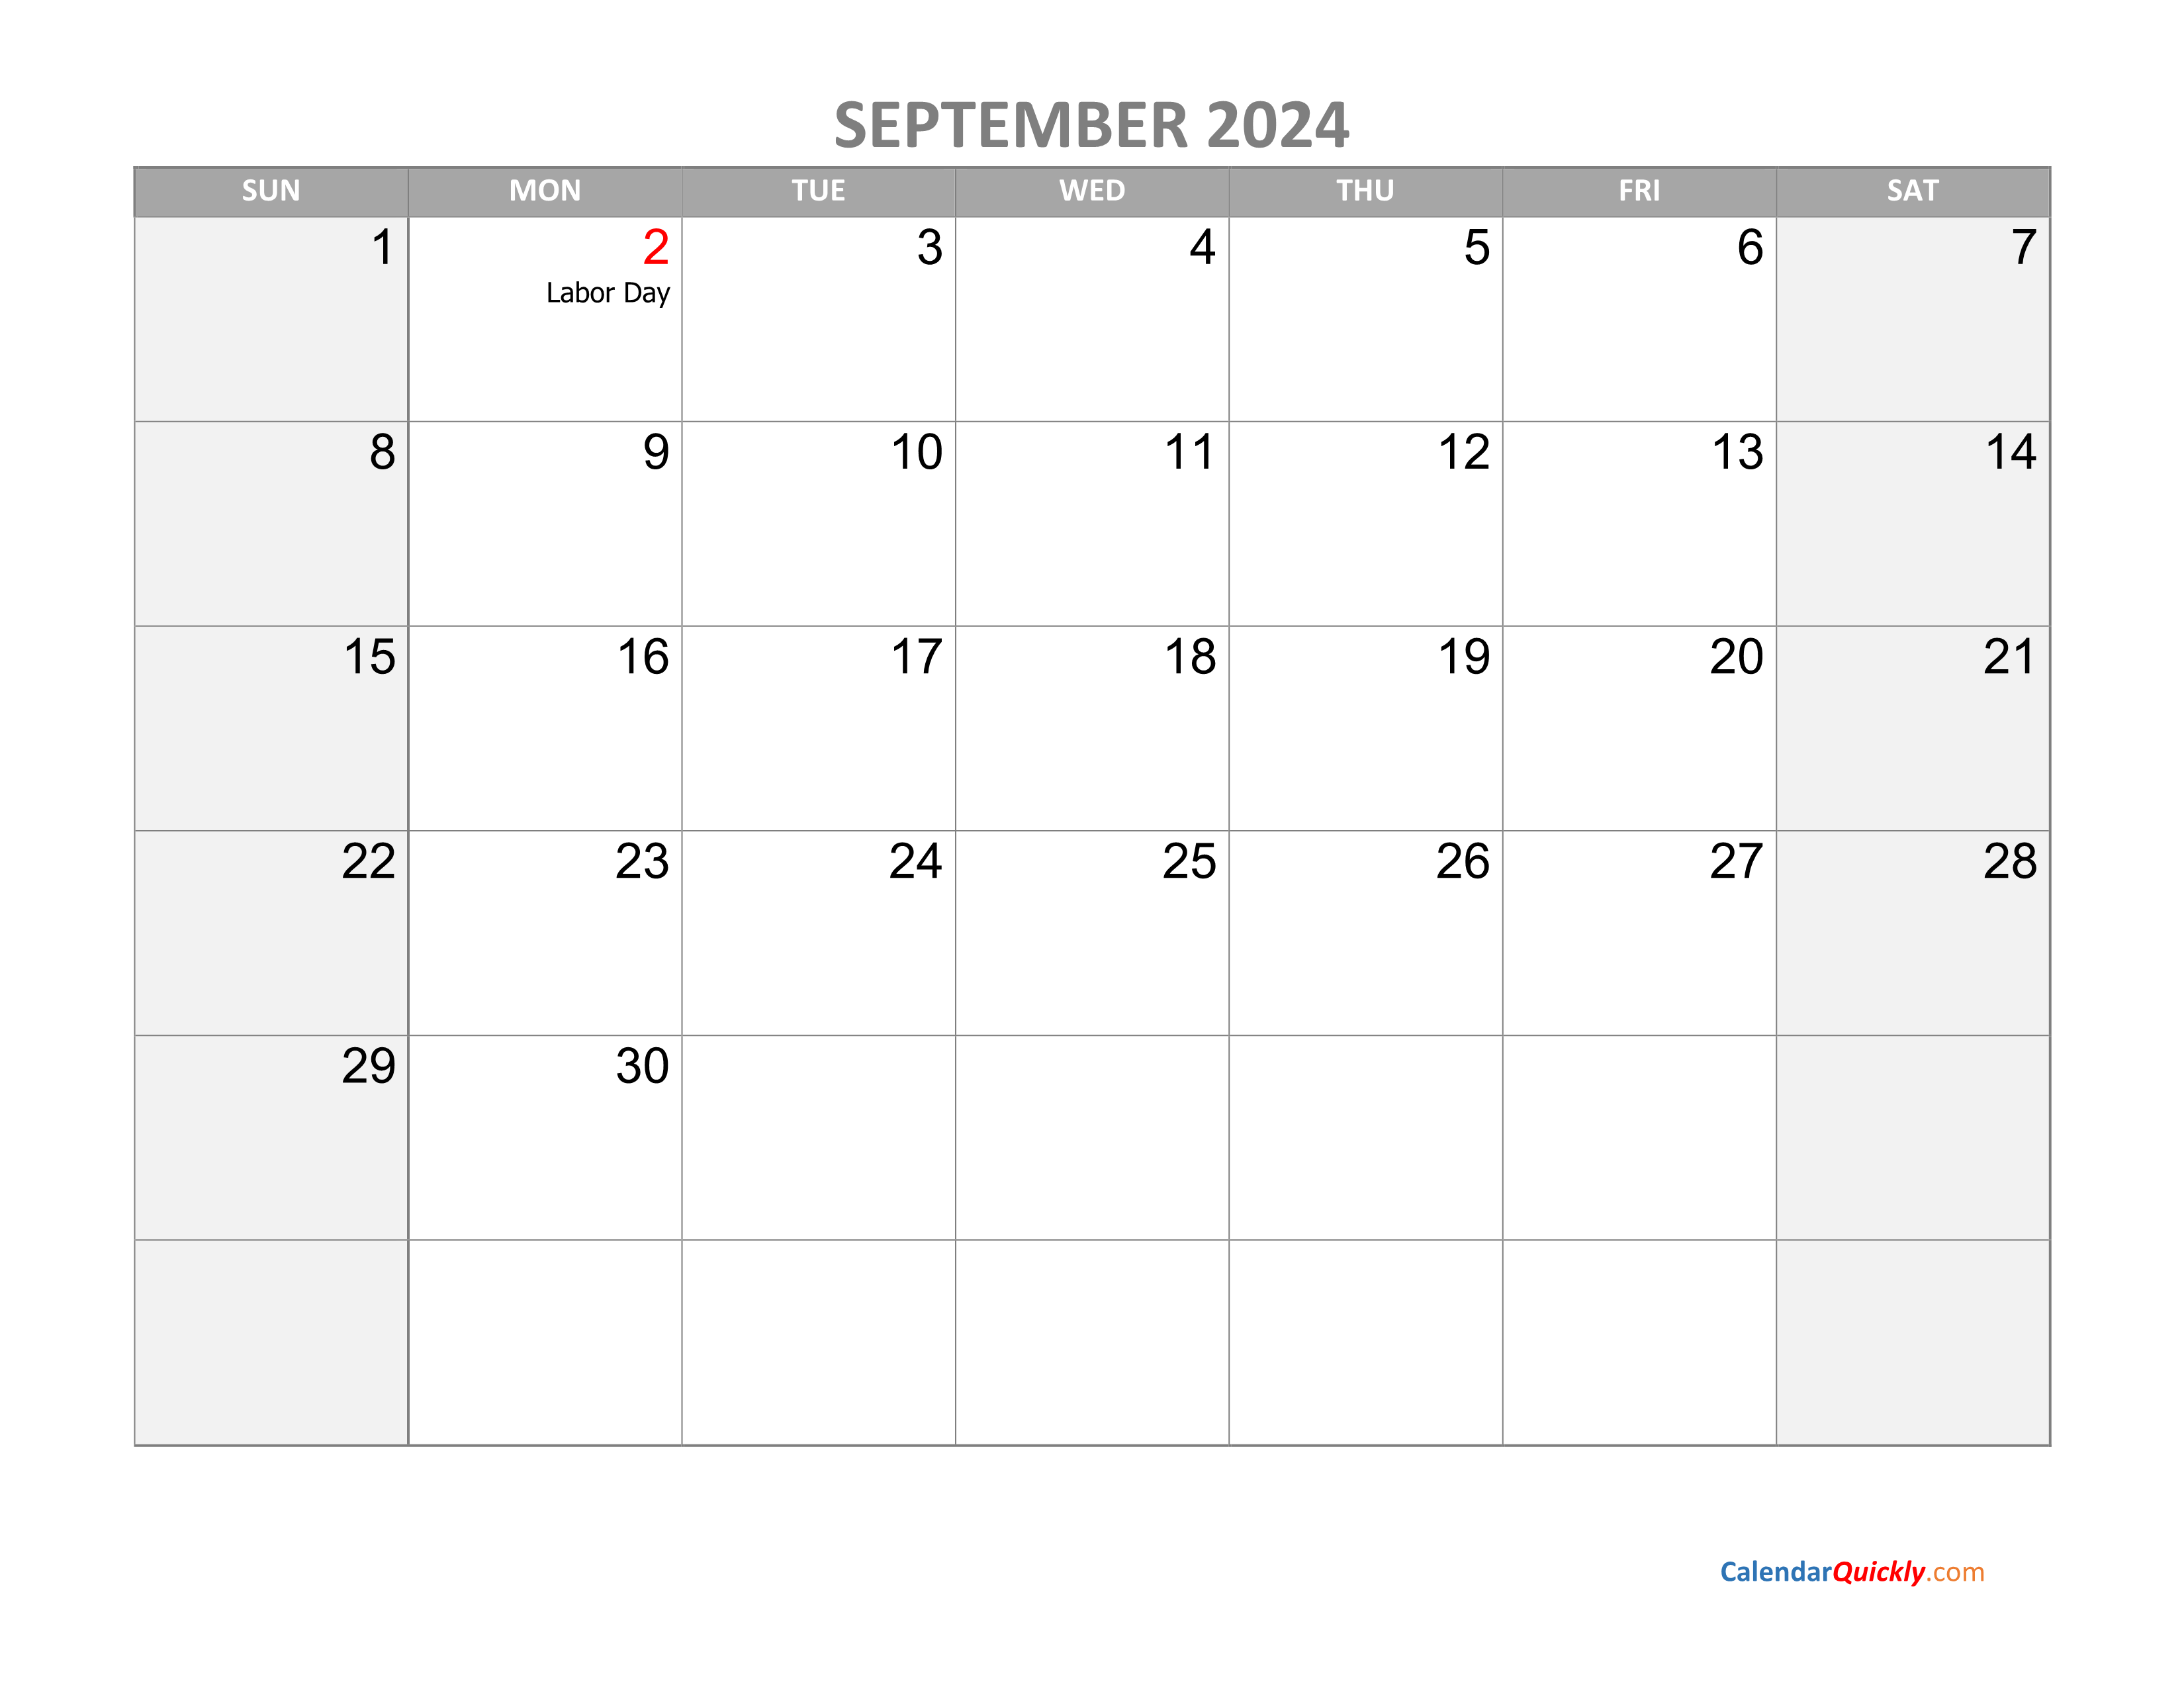 September Calendar 2024 with Holidays Calendar Quickly